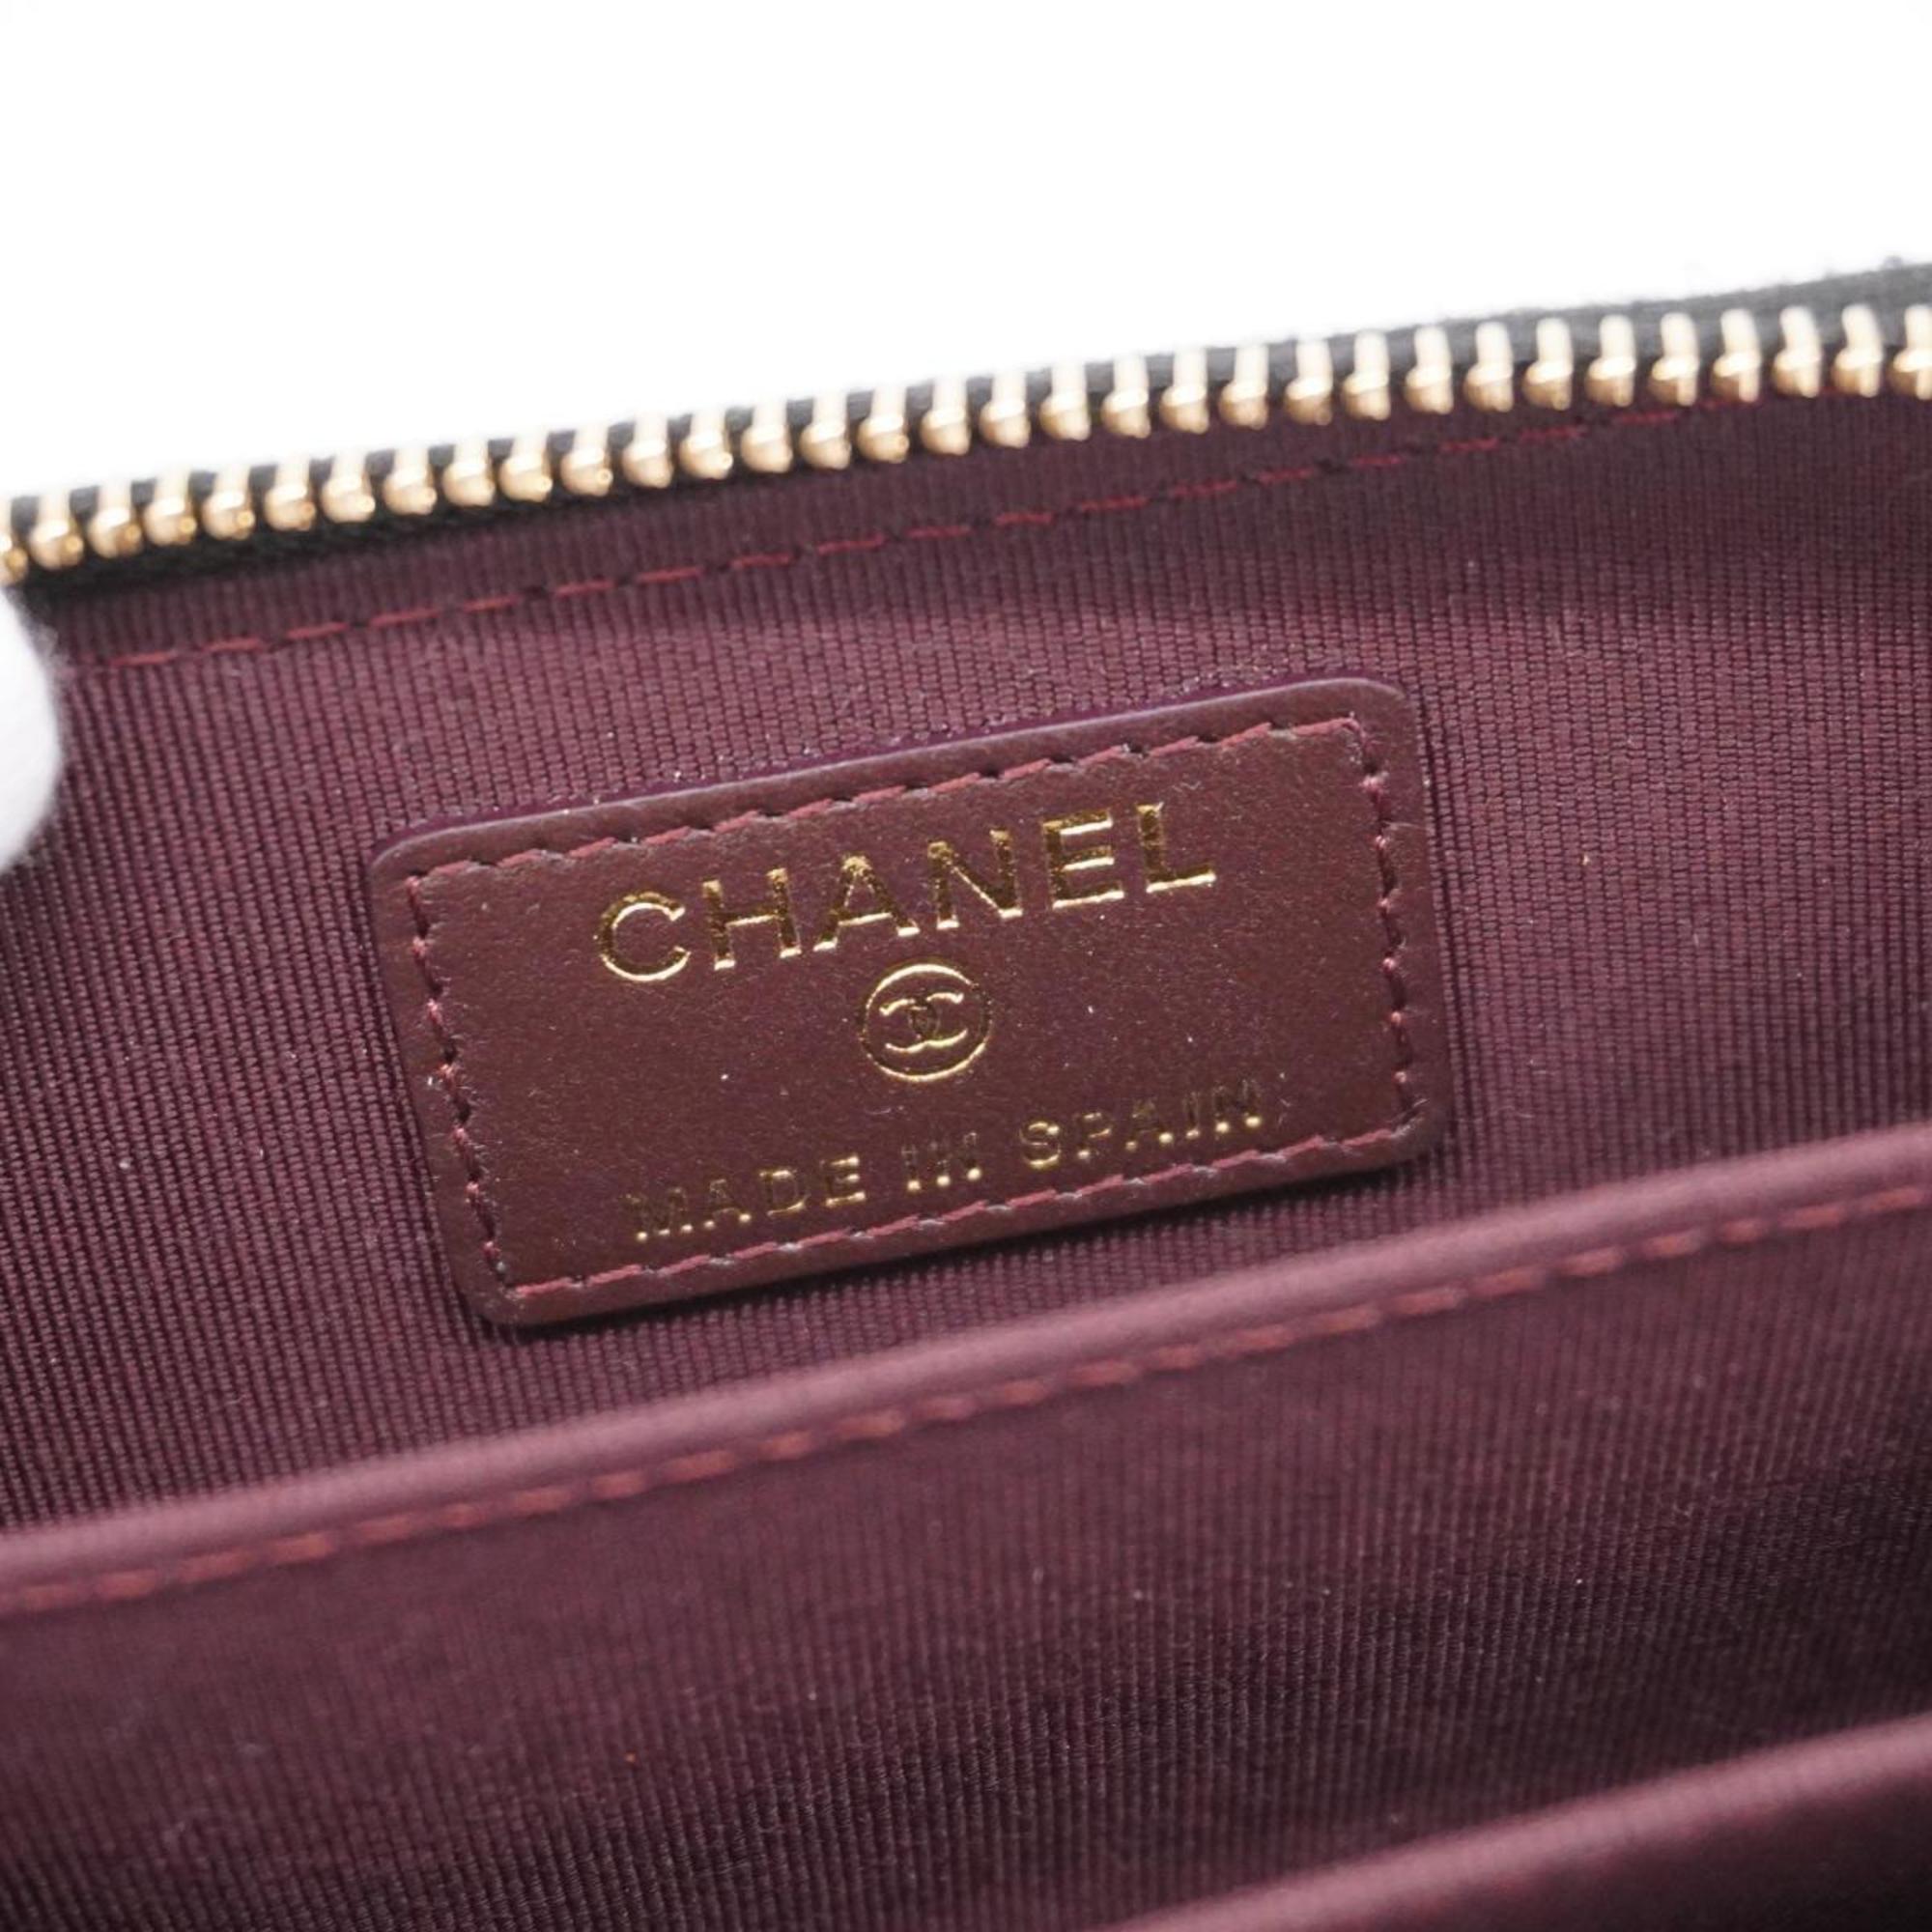 シャネル(Chanel) シャネル 財布・コインケース マトラッセ ラムスキン ブラック   レディース